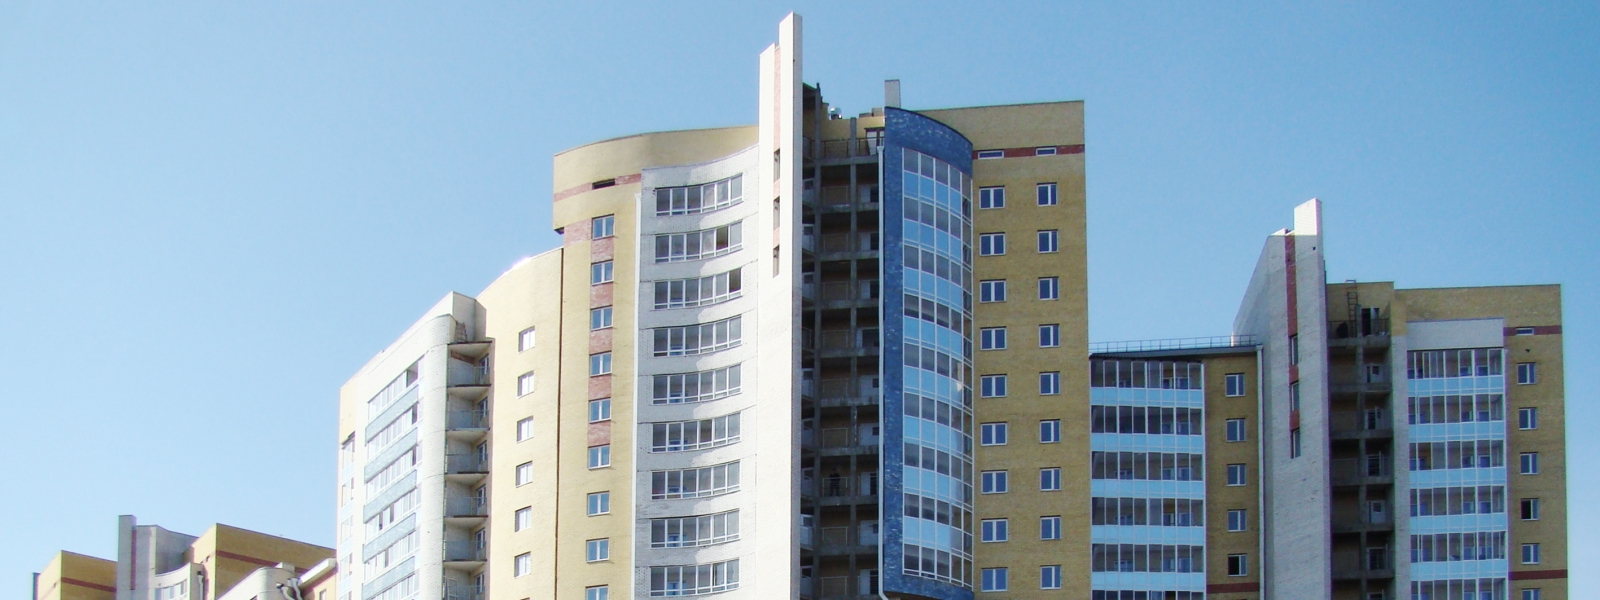 work-Жилые дома со встроенными нежилыми помещениями в Иркутске